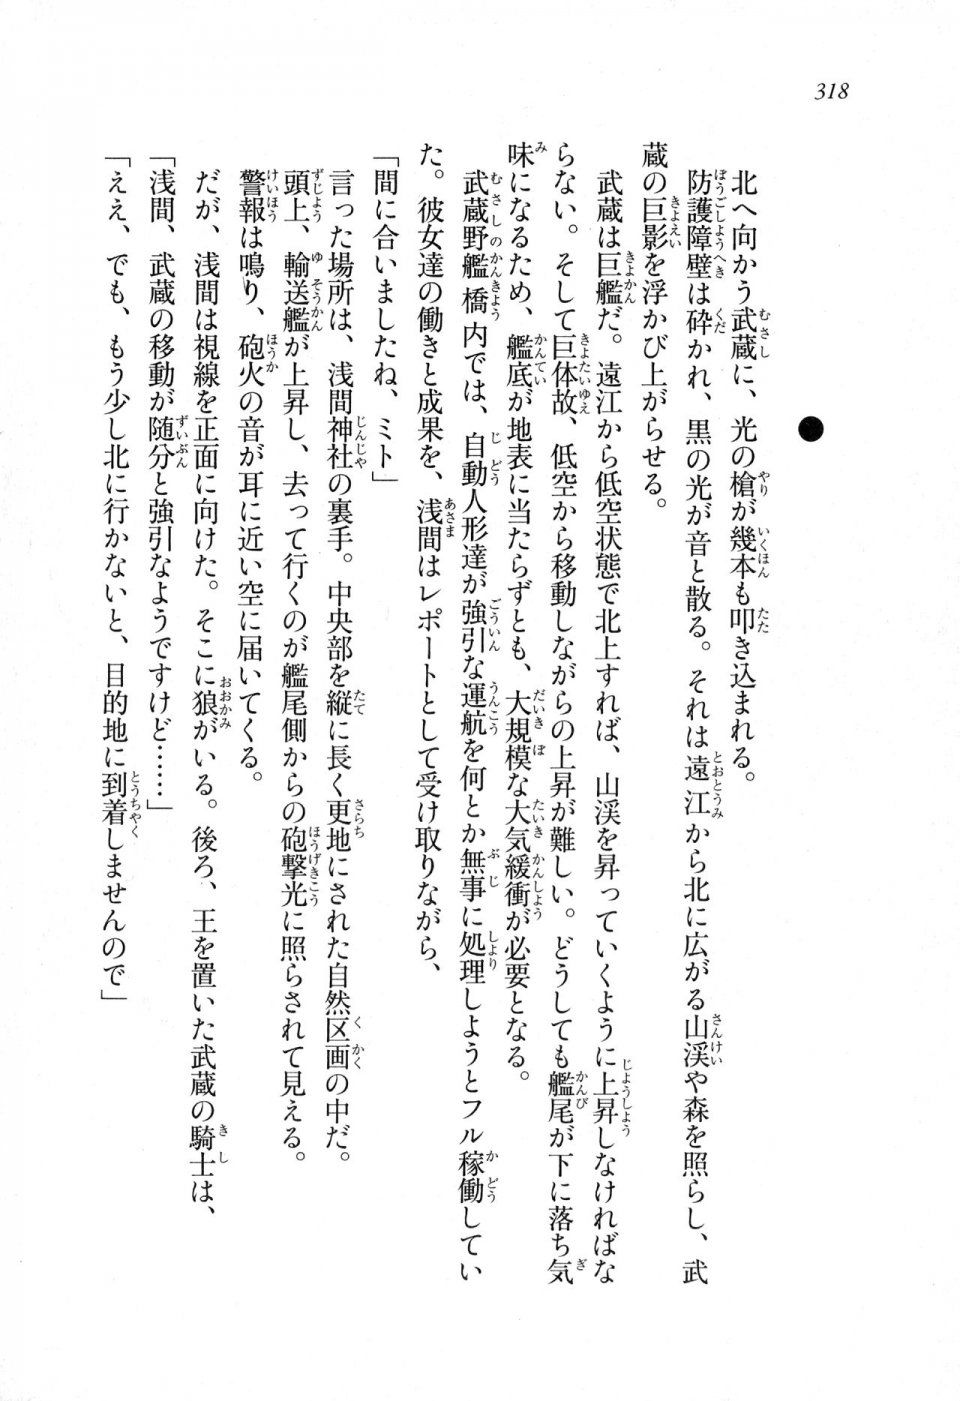 Kyoukai Senjou no Horizon LN Sidestory Vol 1 - Photo #316